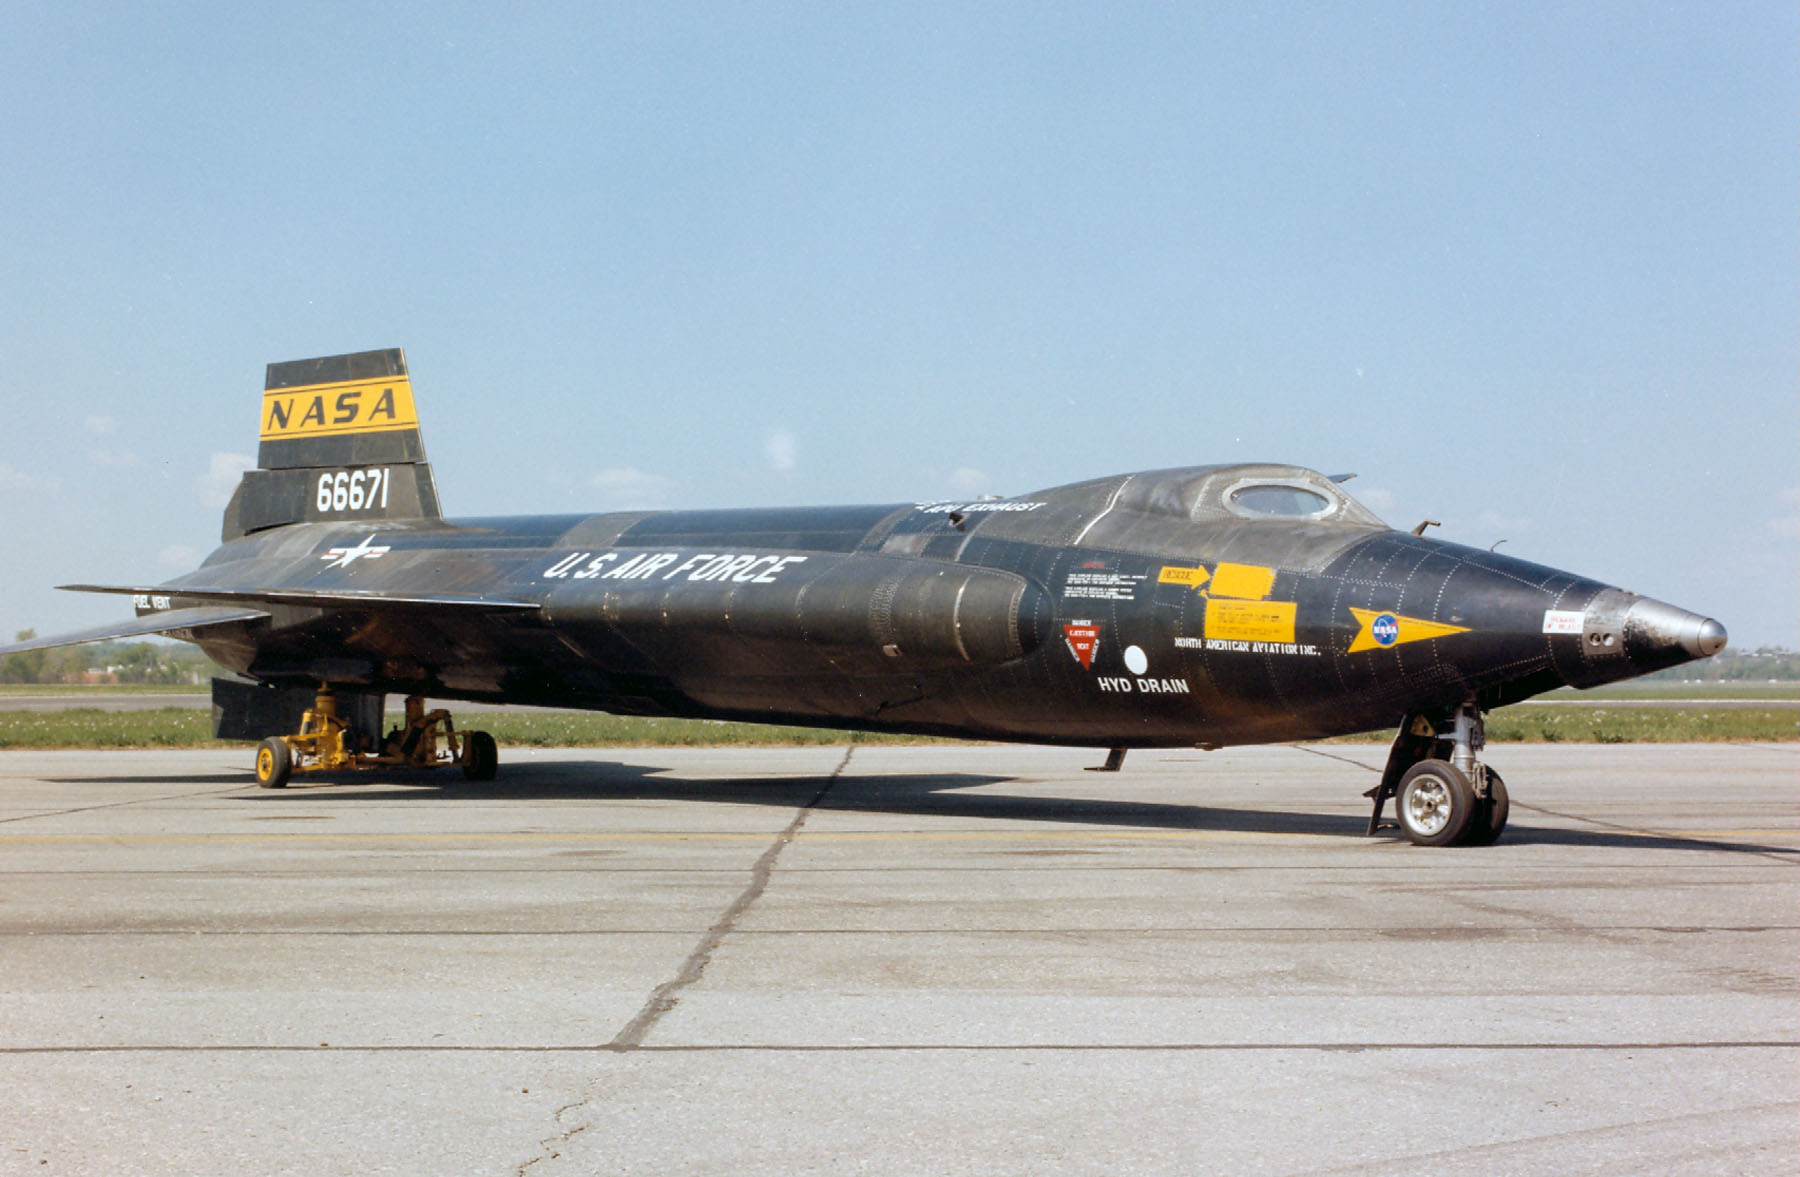 Βίντεο: Το απίστευτο αεροσκάφος-ρουκέτα της North American X-15 με την ταχύτητα των 6,70 Mach!